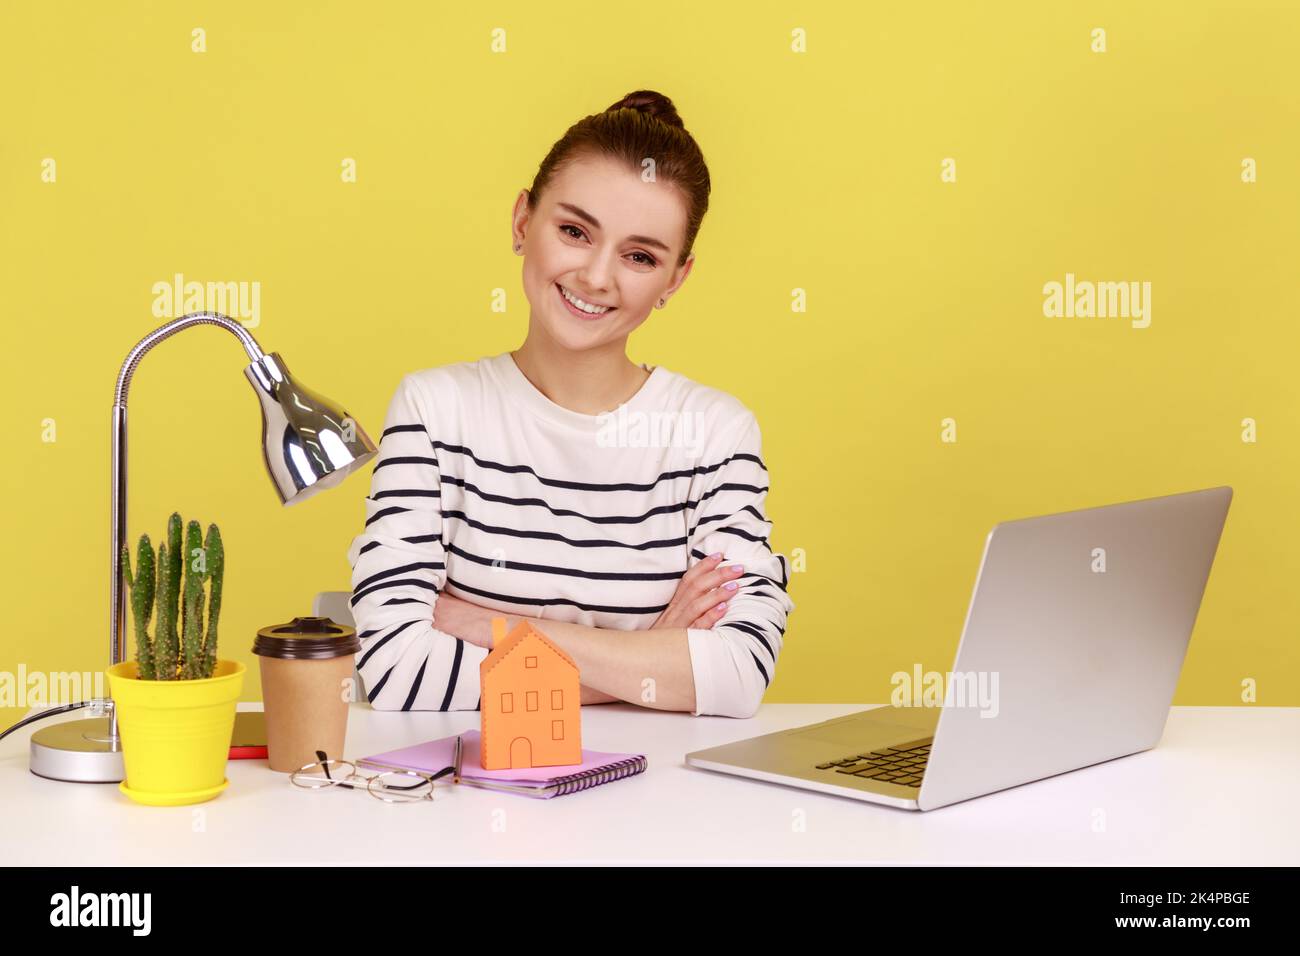 Porträt einer glücklichen Frau am Arbeitsplatz mit einem kleinen Papierhaus, das mit einem Lächeln auf die Kamera blickt und von ihrer eigenen Wohnung träumt. Studio-Innenaufnahme isoliert auf gelbem Hintergrund. Stockfoto